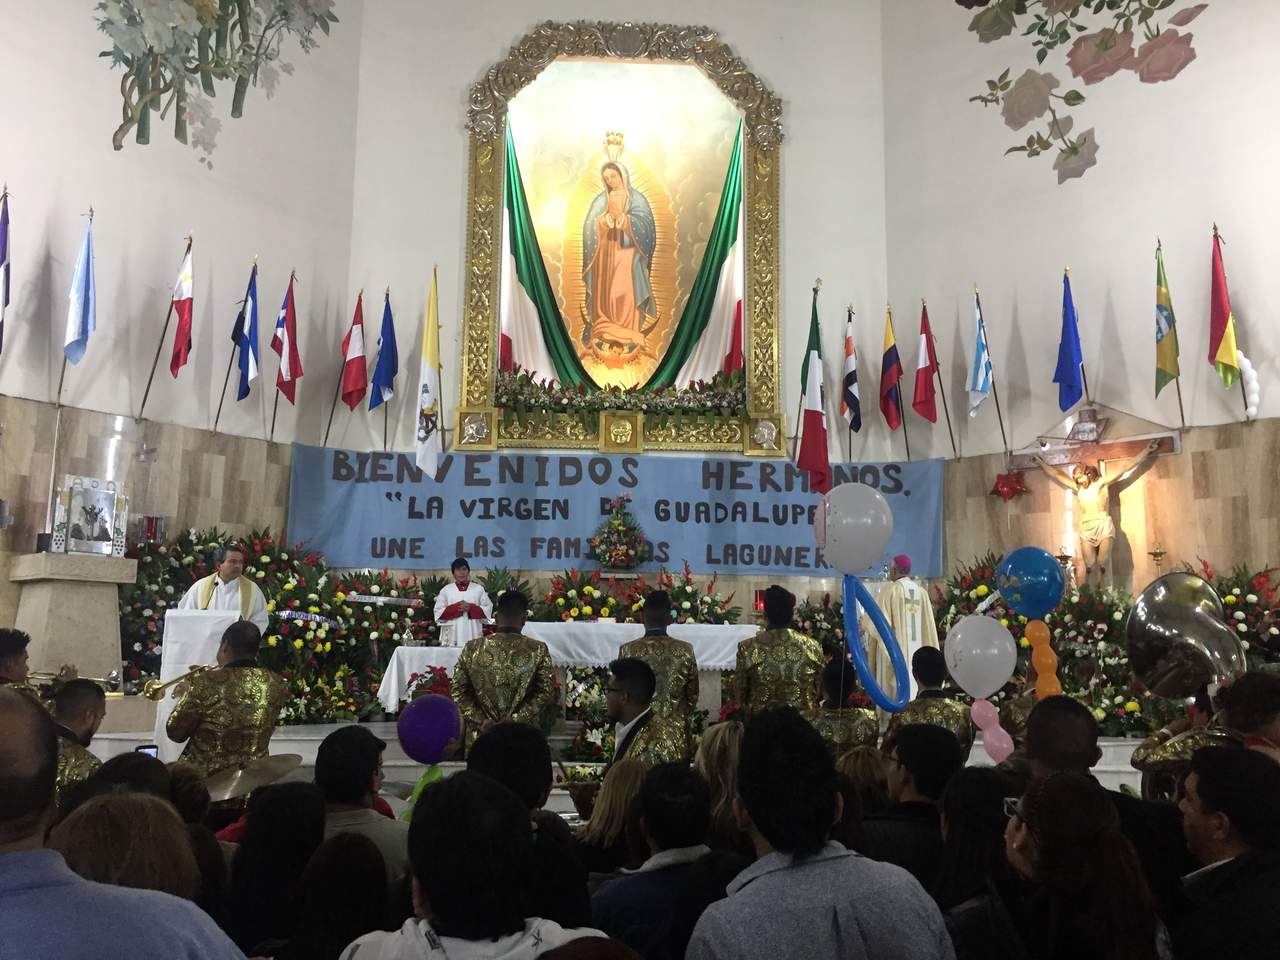 Con júbilo. Un grupo musical acompañó a los fieles para entonar las tradicionales ‘Mañanitas’ a la Virgen Morena. (Ramón Sotomayor Covarrubias)